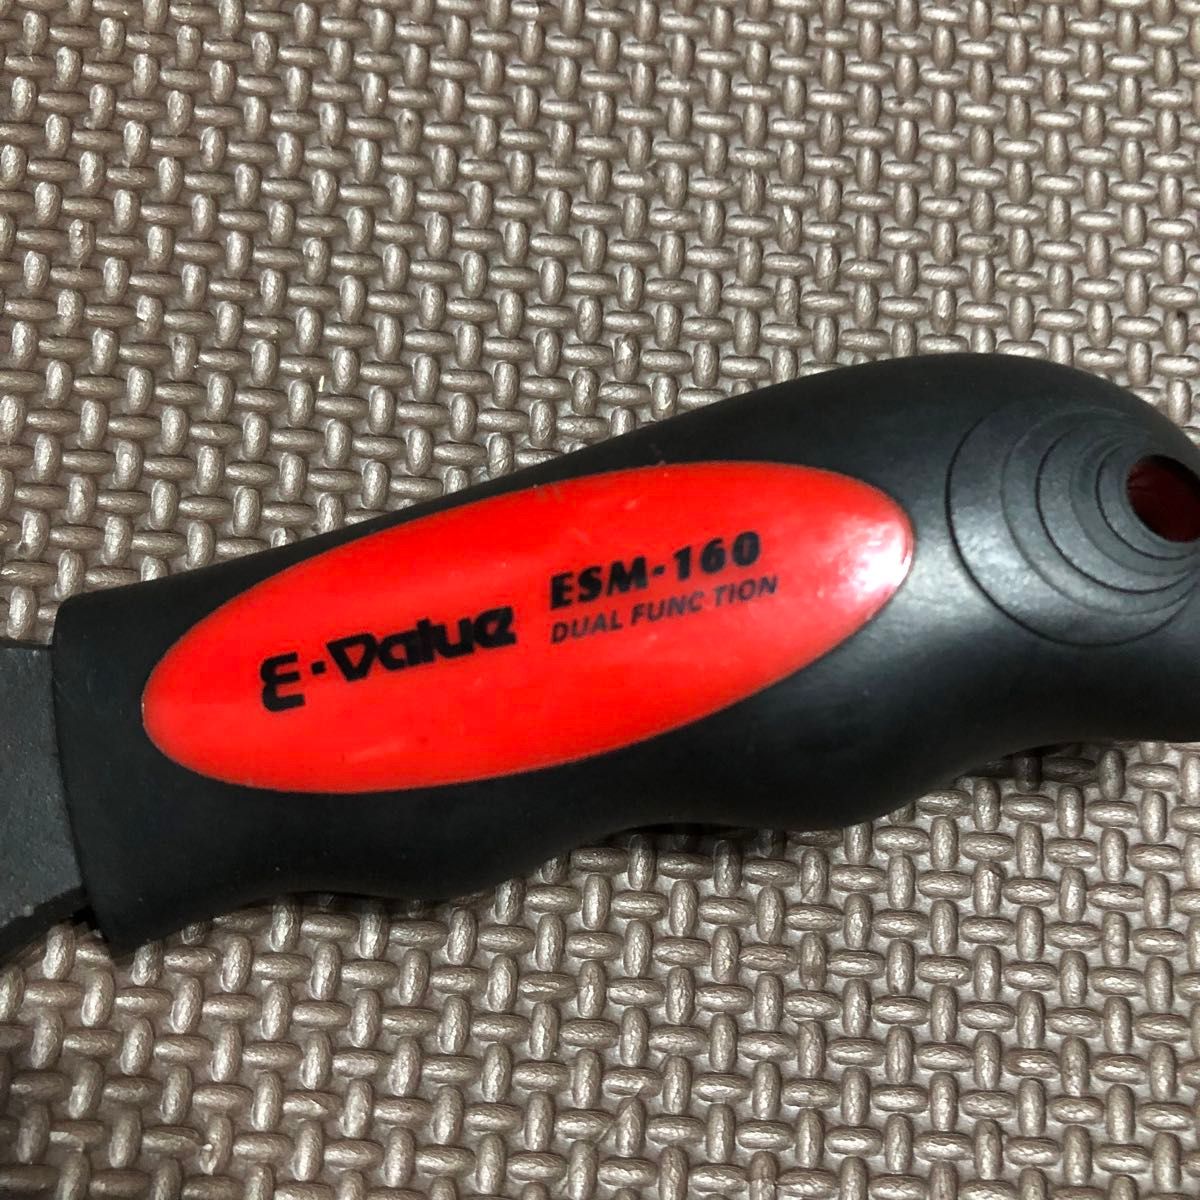 【最安値】E-Value 2WAYショートモンキー スパナ モンキレンチ ESM-160